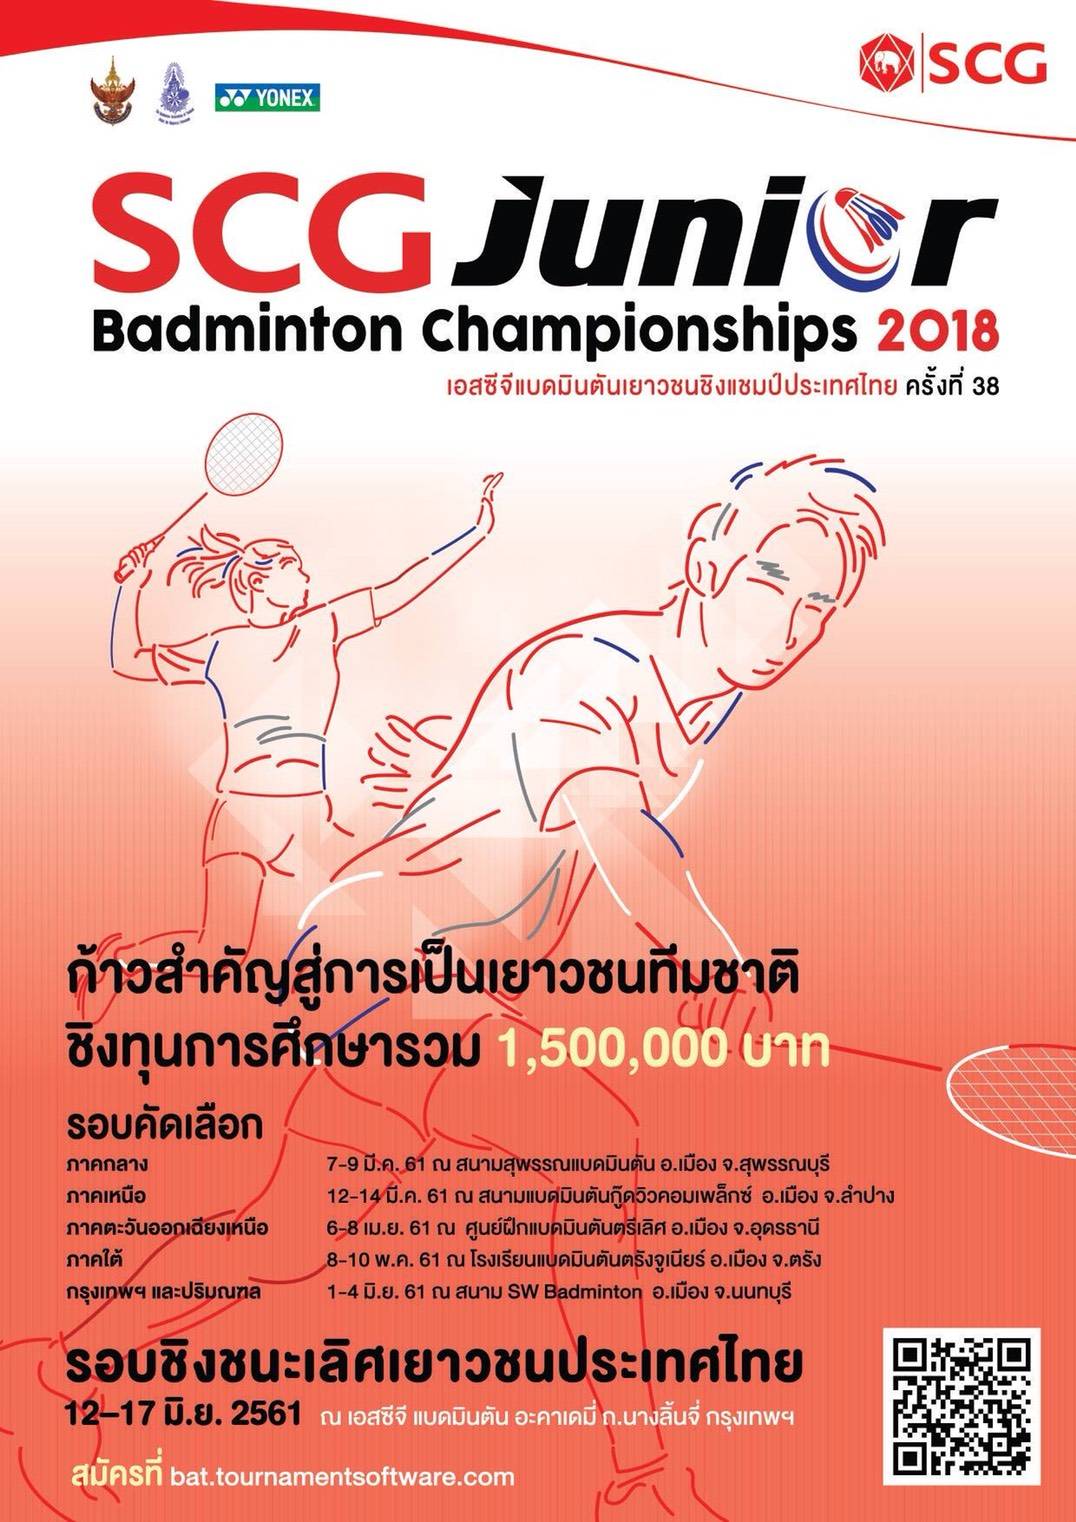 เอสซีจีแบดมินตันเยาวชนชิงแชมป์ประเทศไทย  ประเดิมสนามแรกที่ สุพรรณบุรี 7 – 9 มีค. 61